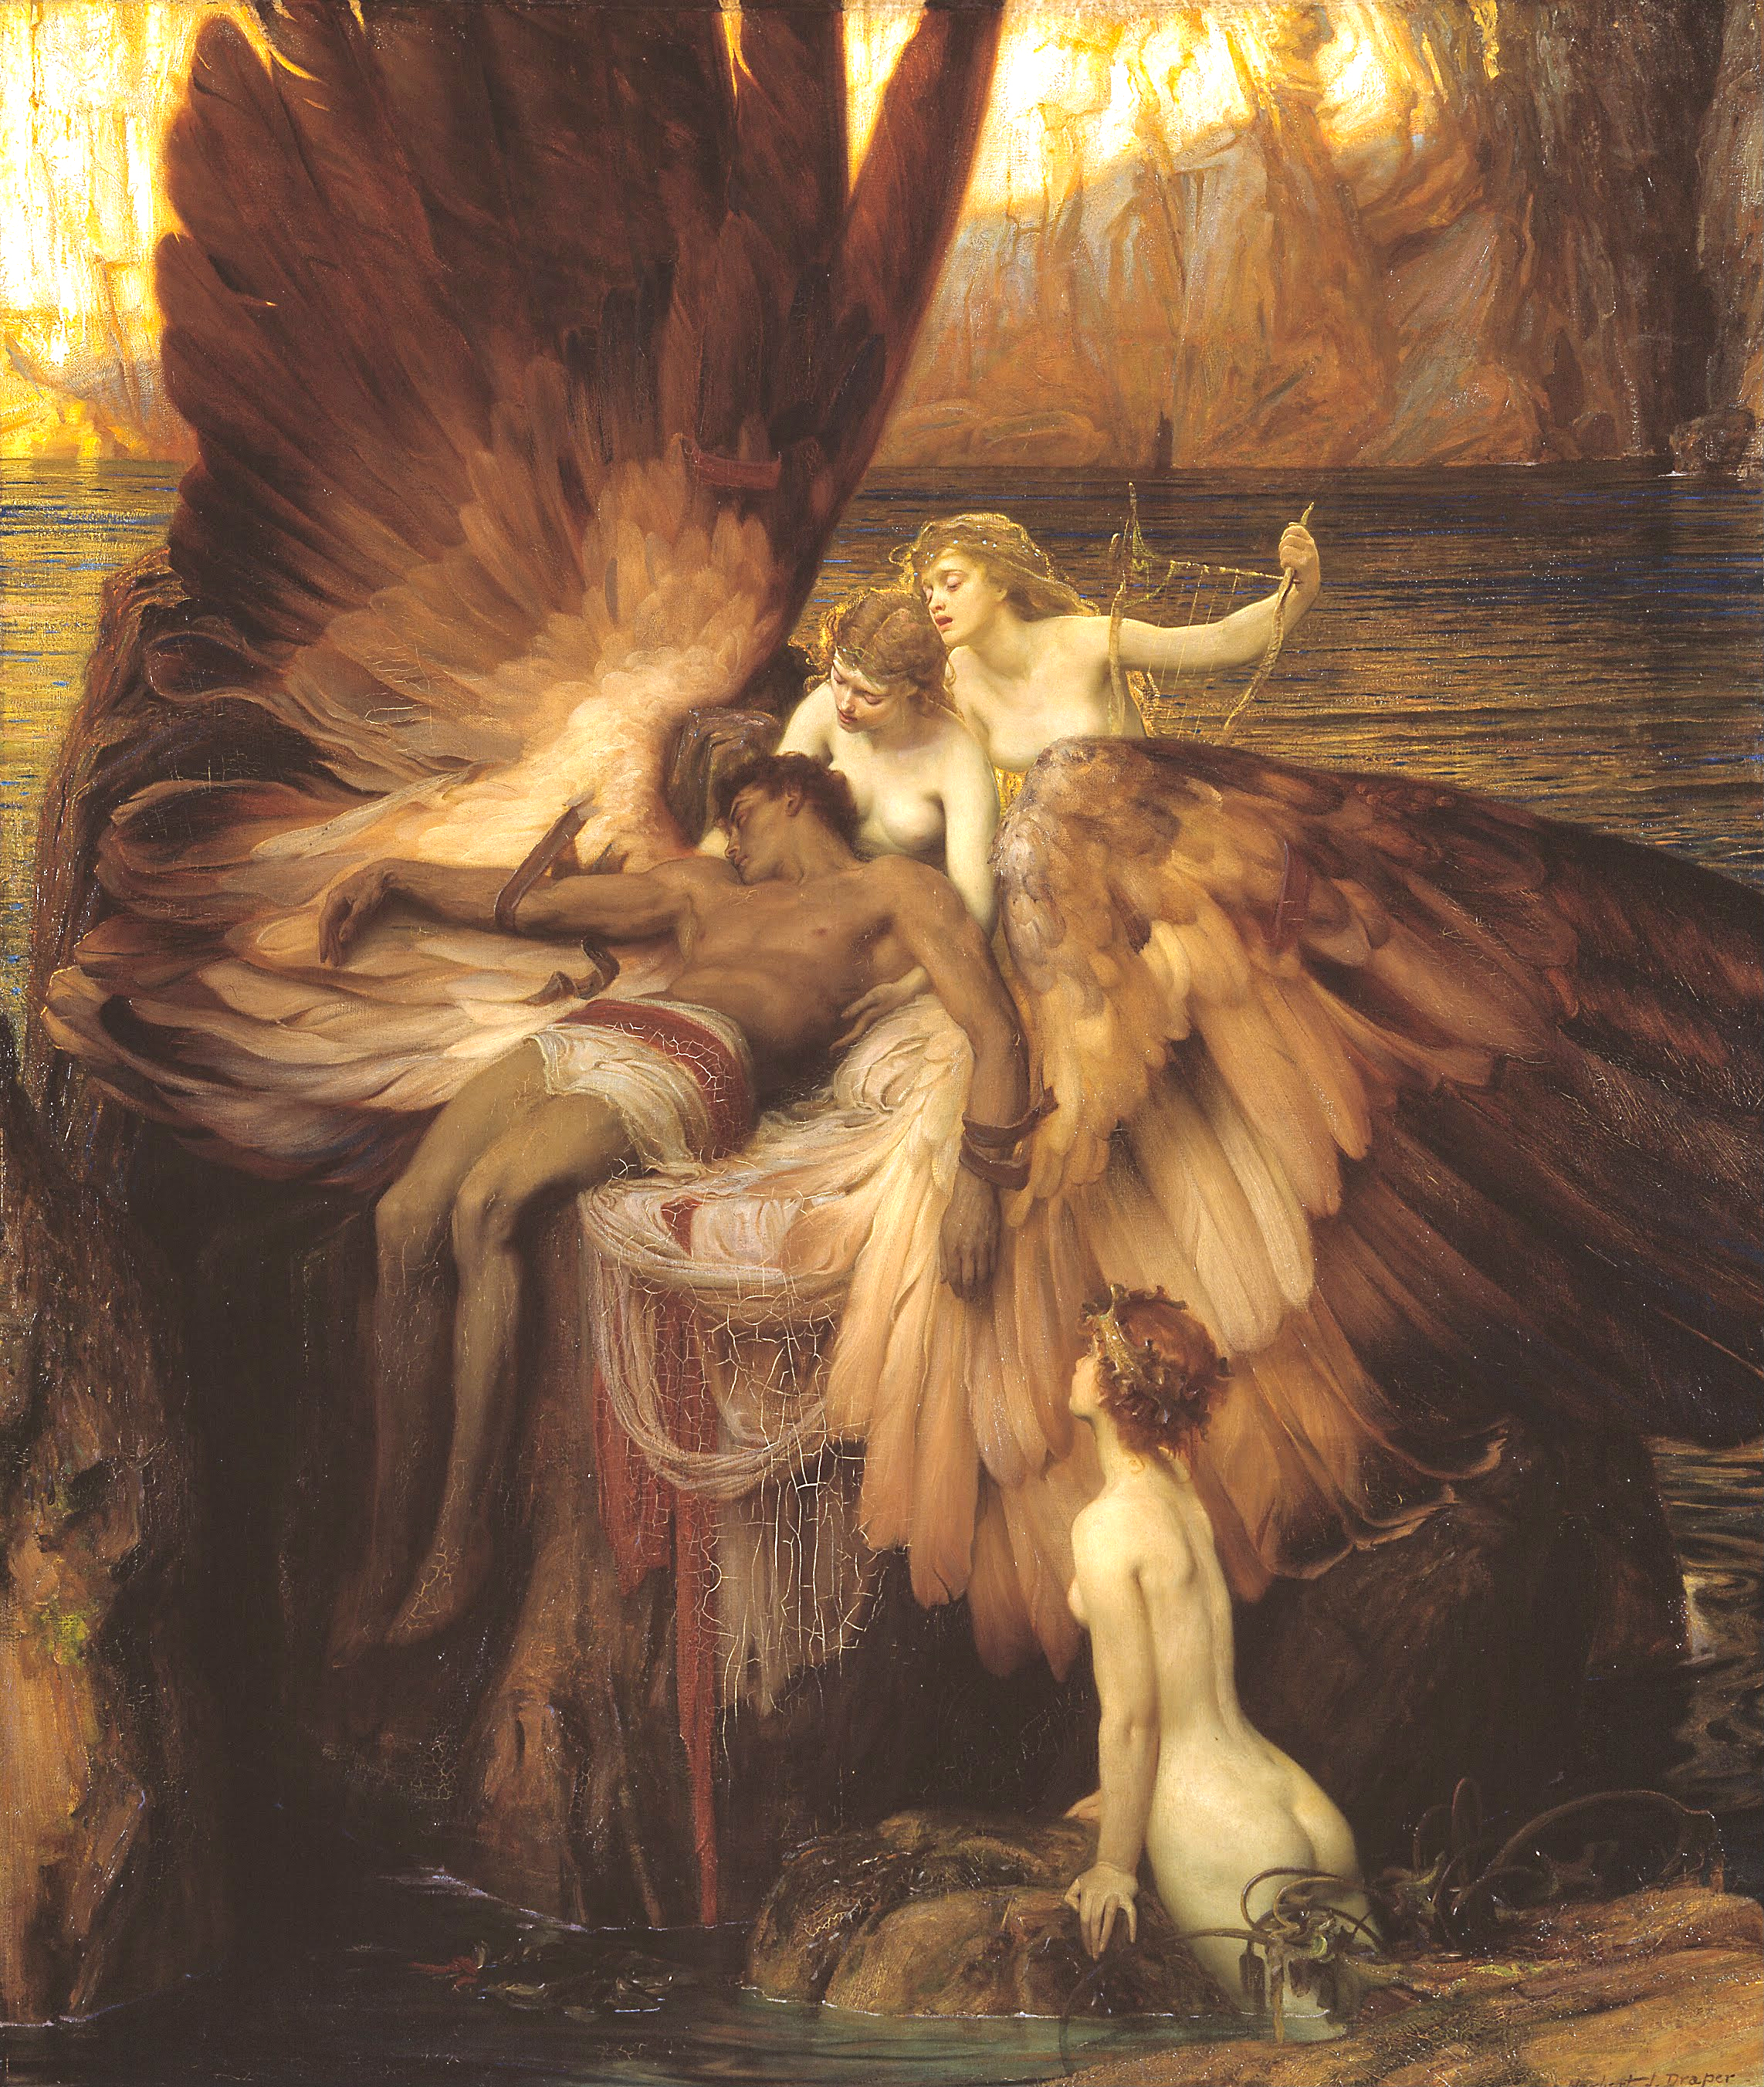 İkarus'a Ağıt by Herbert James Draper - 1898 - 182 x 155 cm 